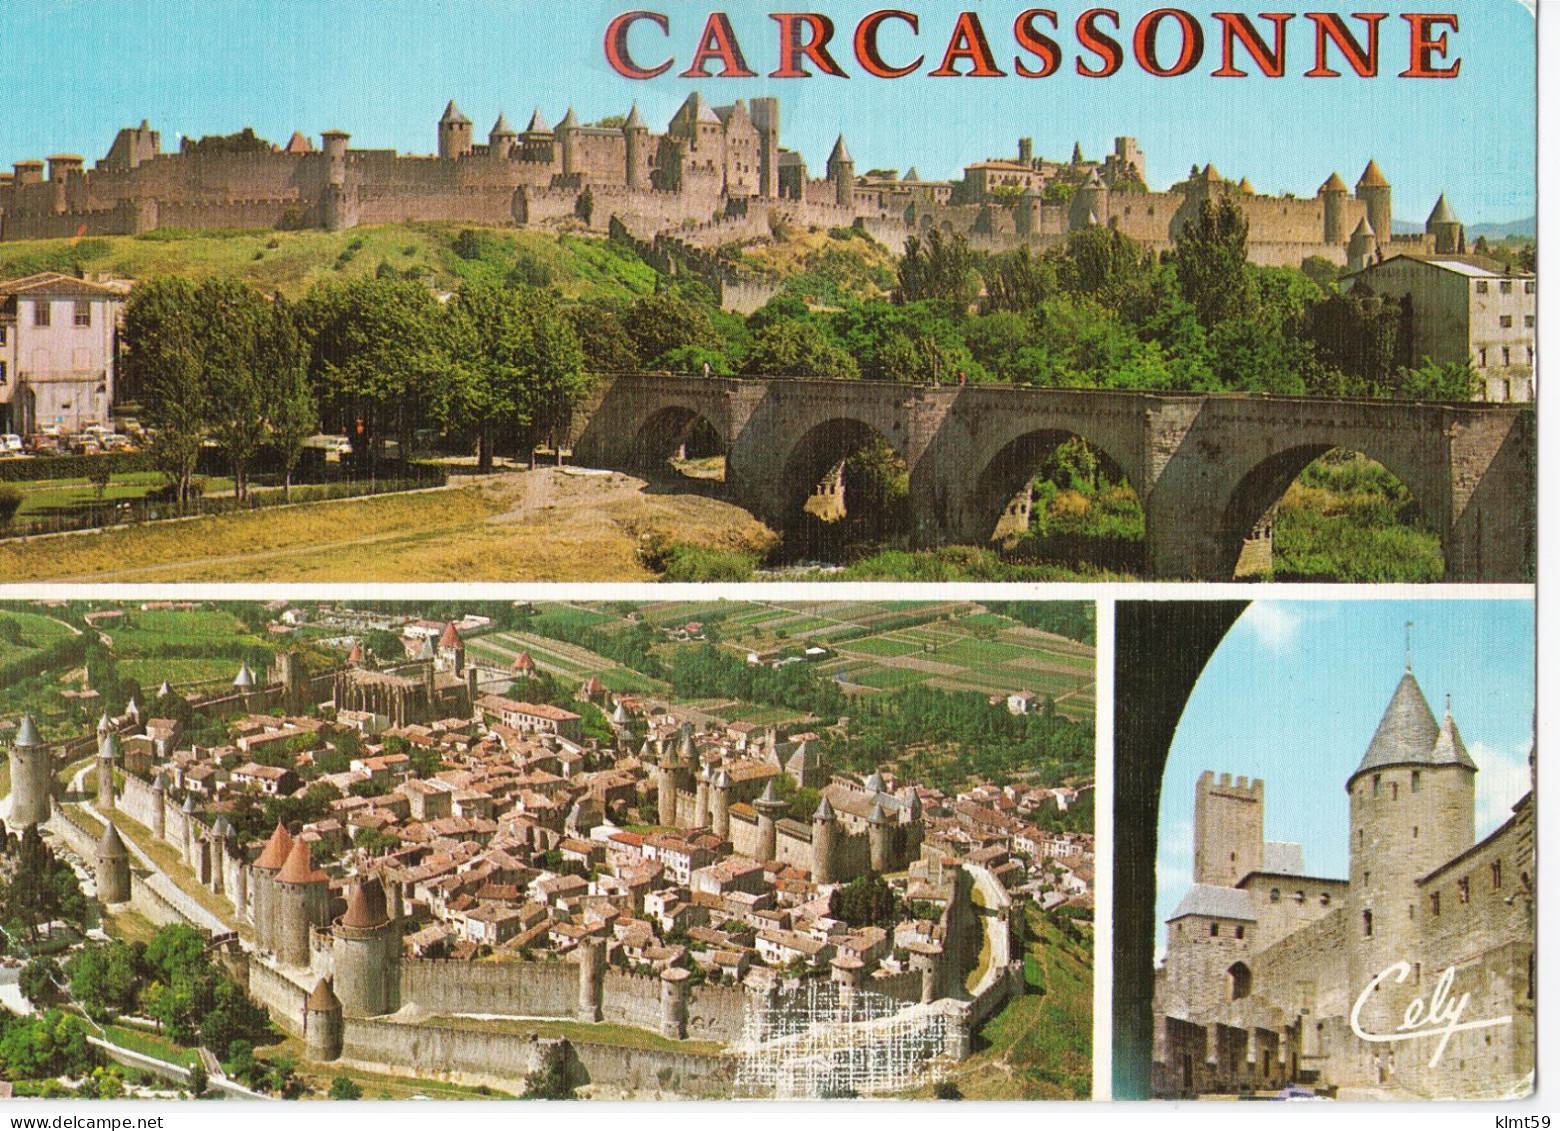 Carcassonne -  Multivues - Carcassonne